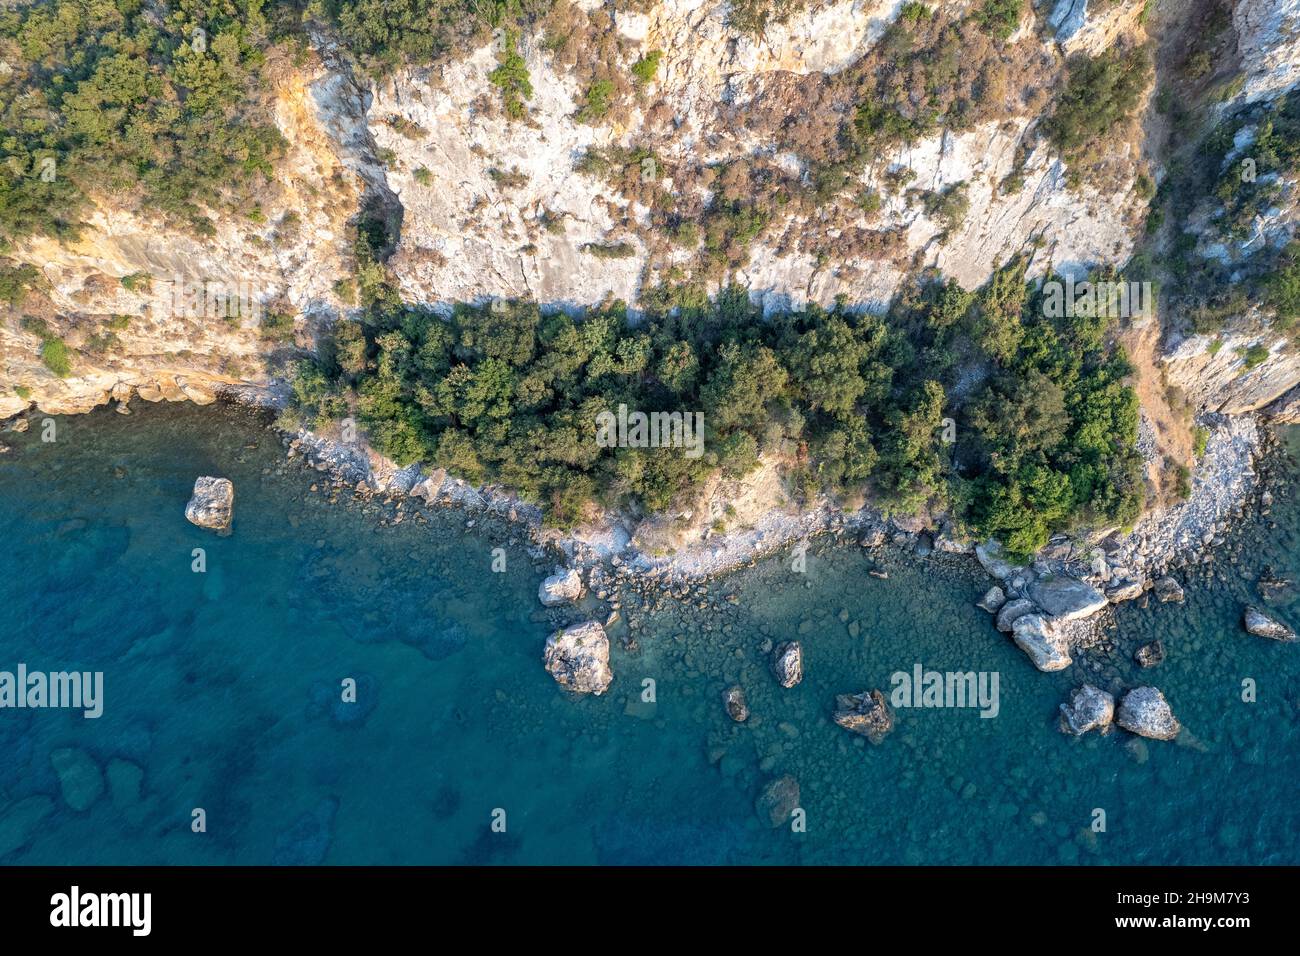 Drohnenaufnahme einer Steilküste a Griechenland. Baum, Klippe, Meer, Wasser, Grün, blau Foto Stock